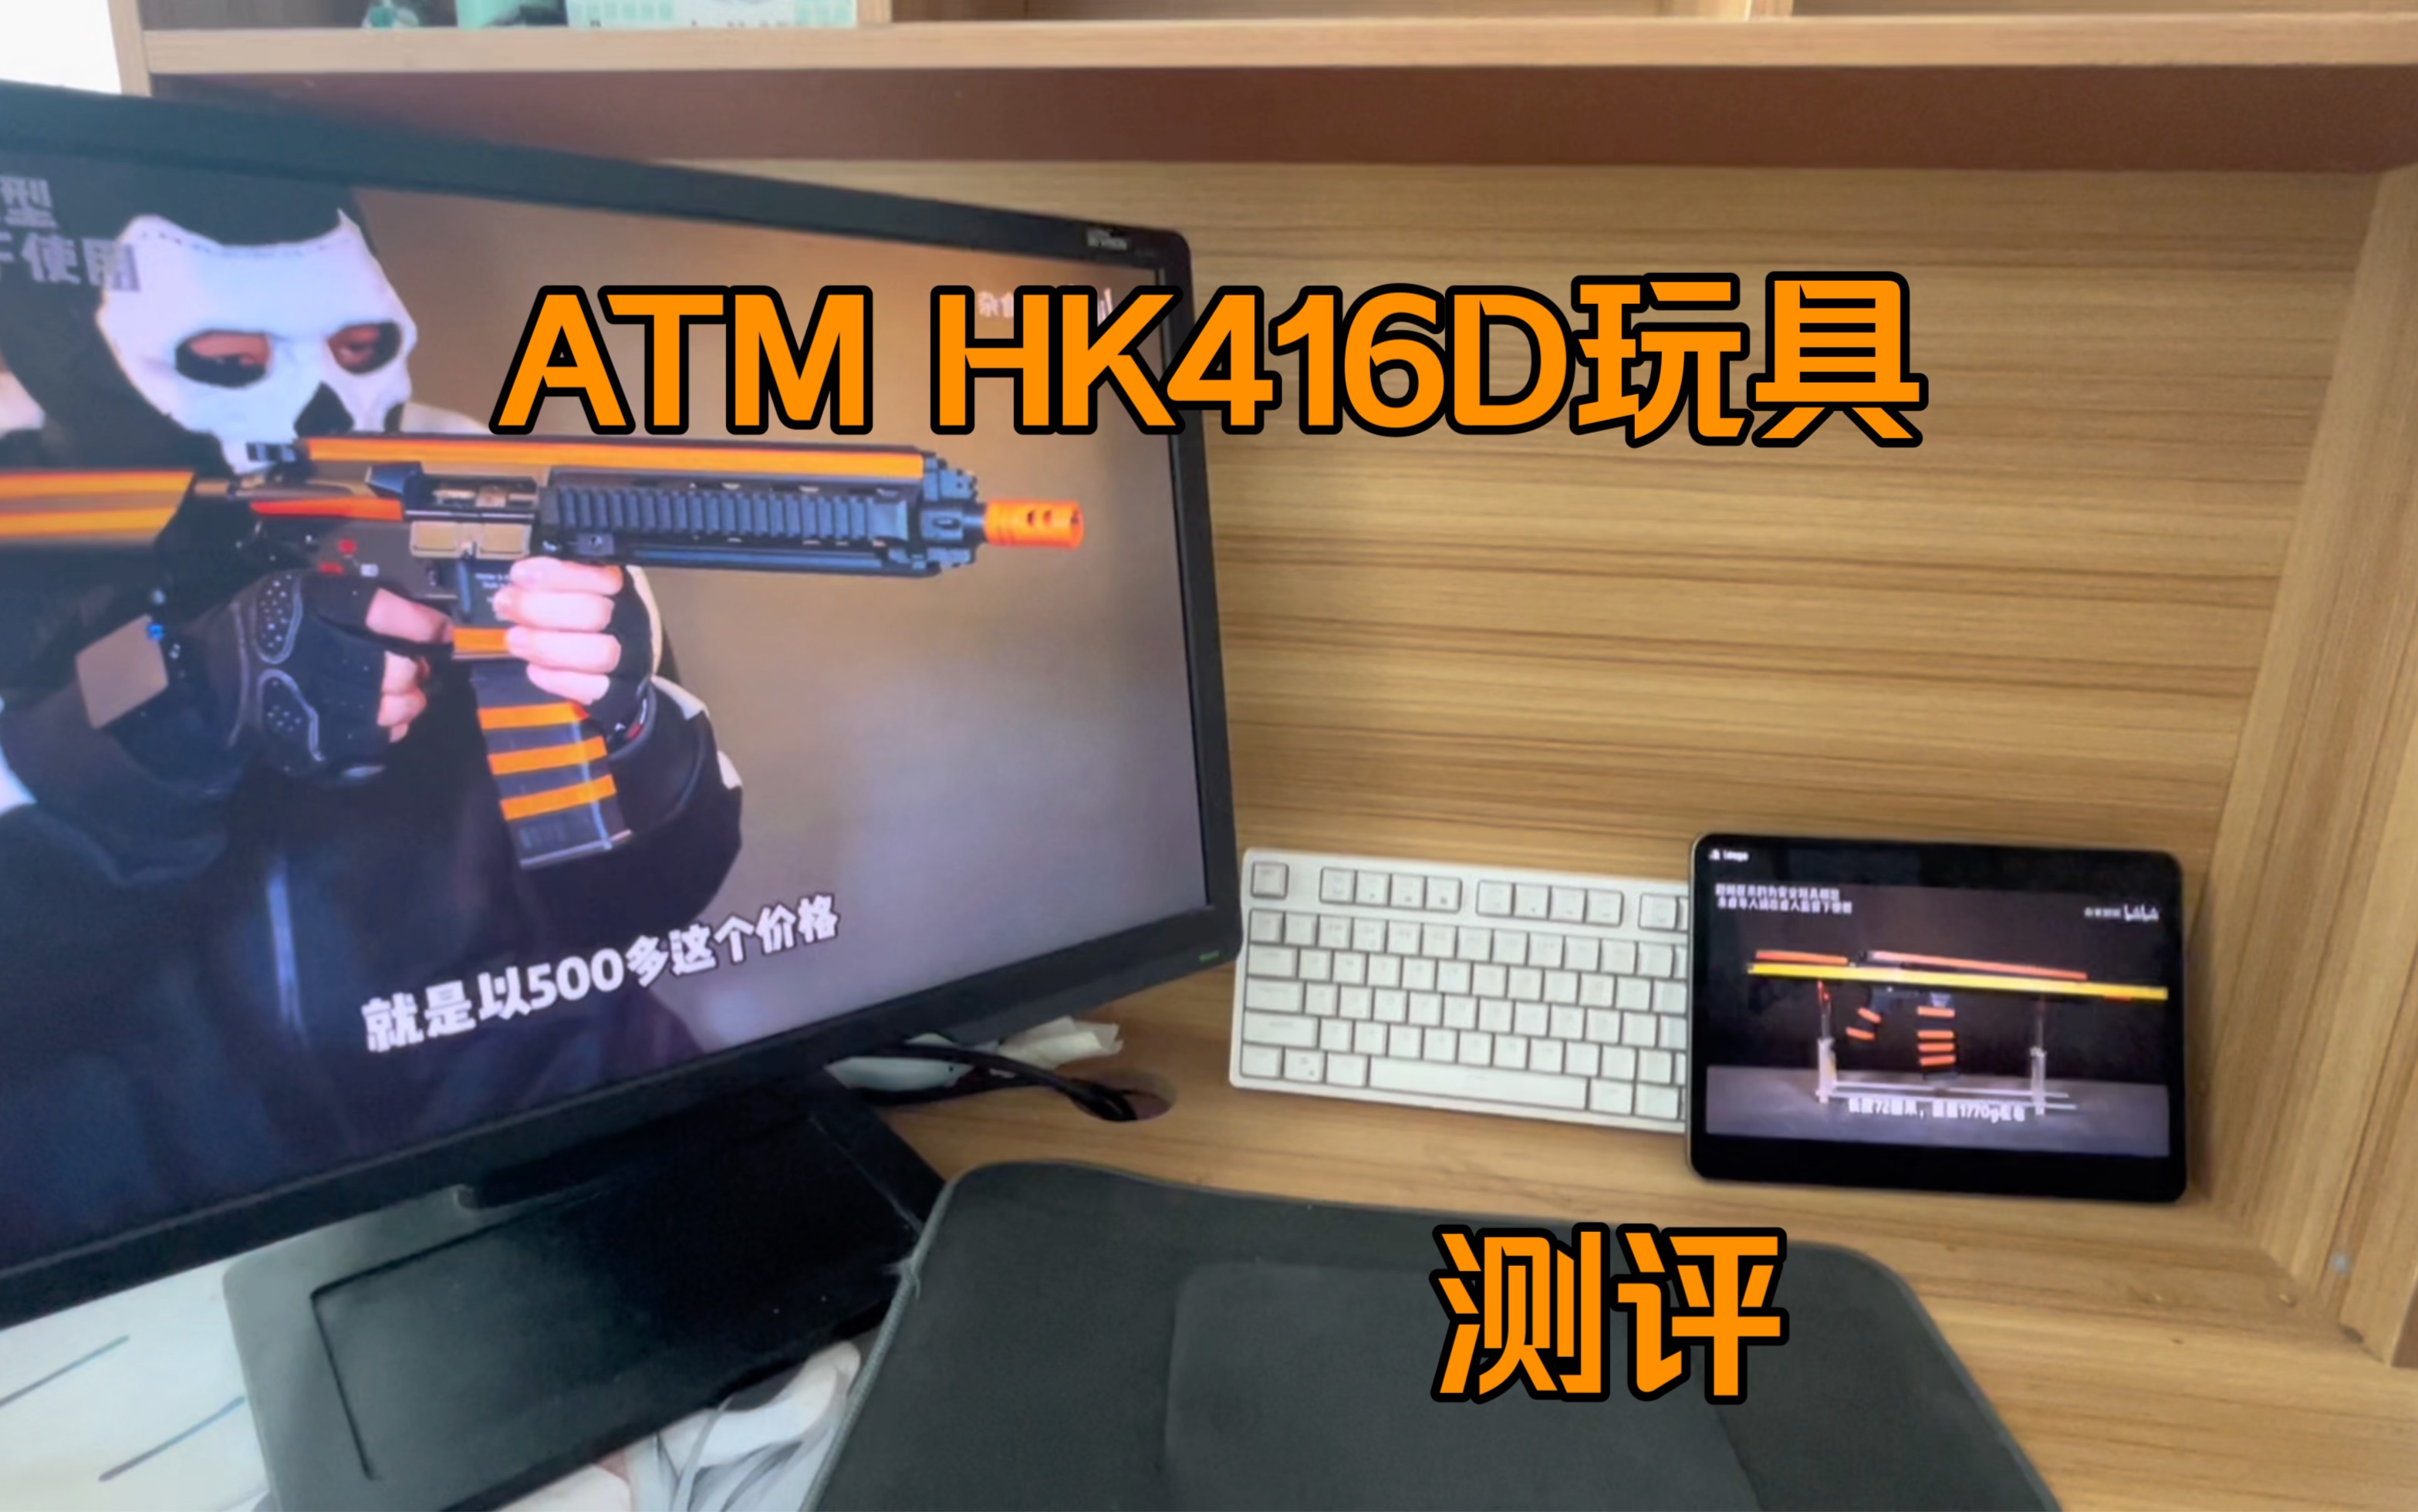 ATM HK416D测评